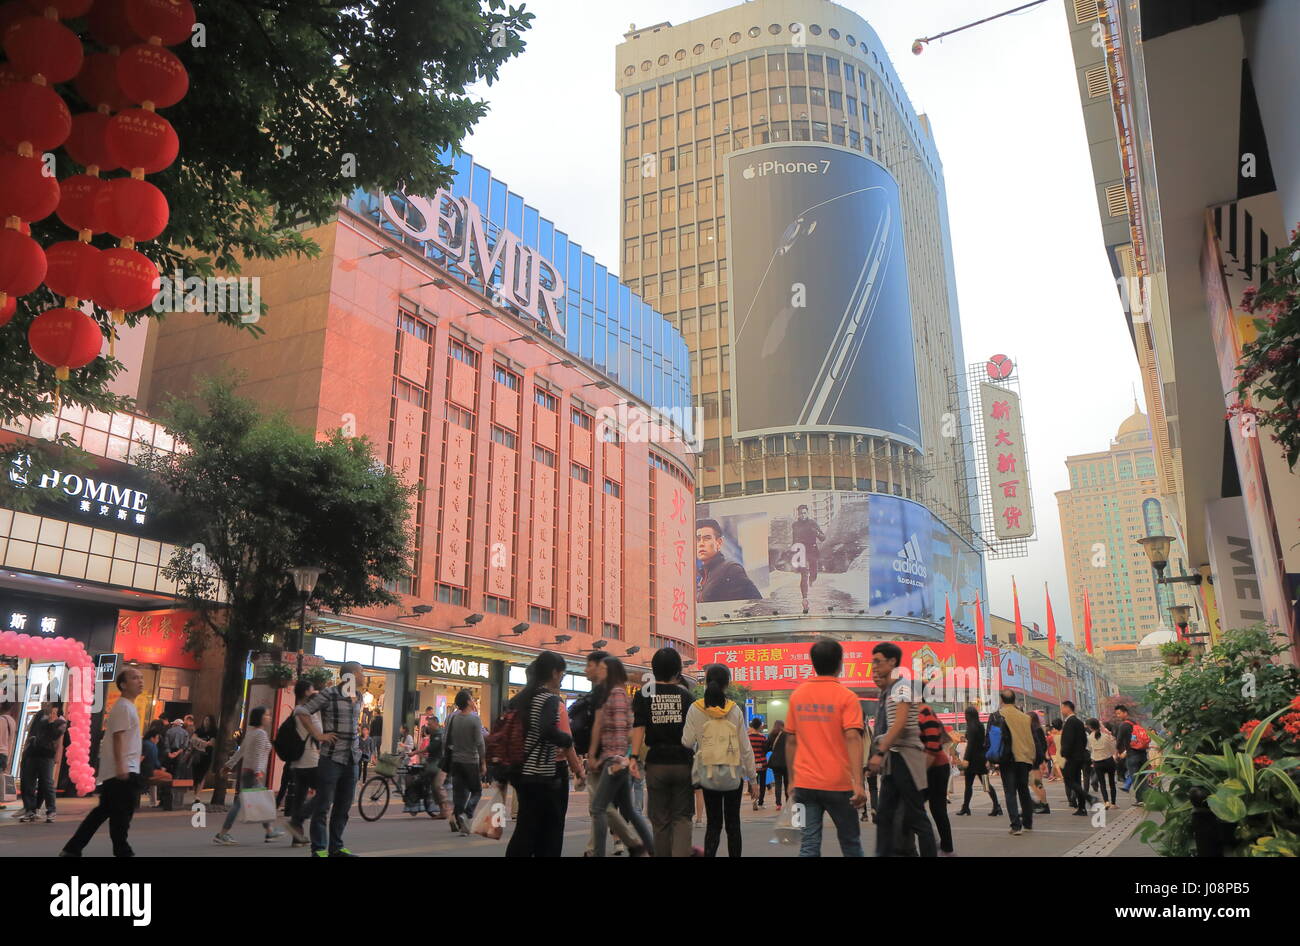 Personnes visitent Beijing Lu road shopping district à Guangzhou en Chine. Banque D'Images